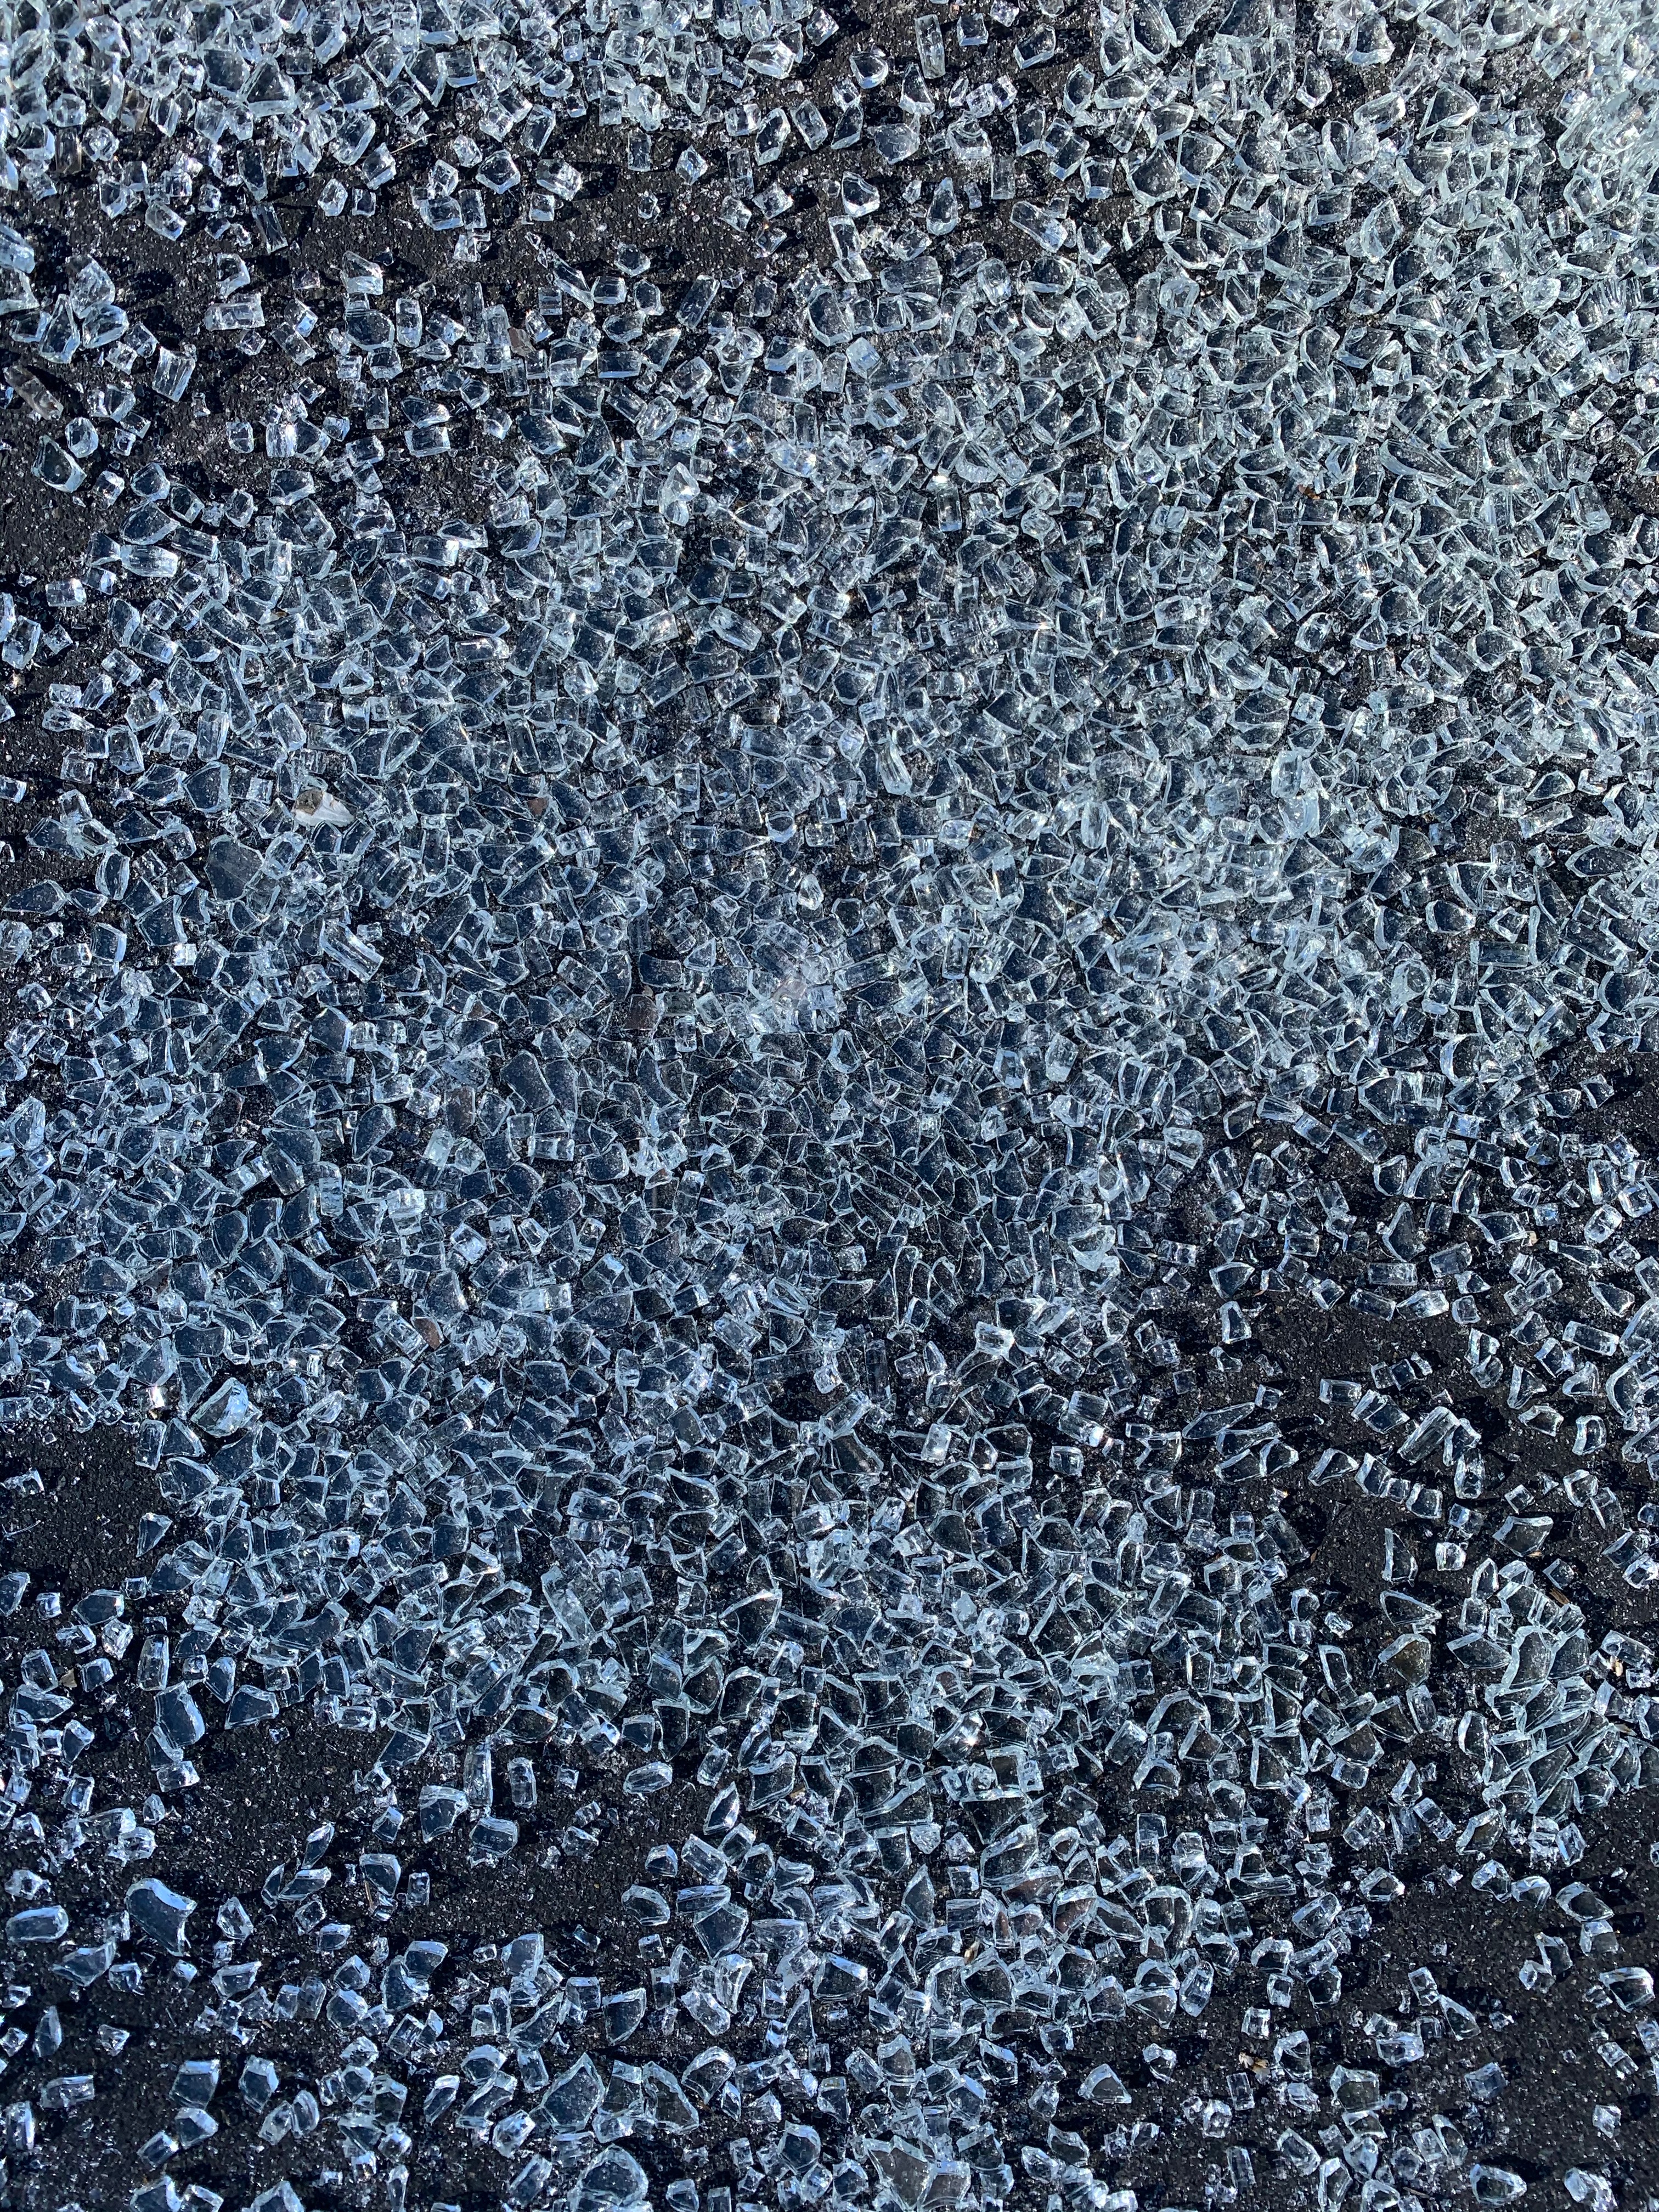 Chunks of broken glass scattered over black asphalt